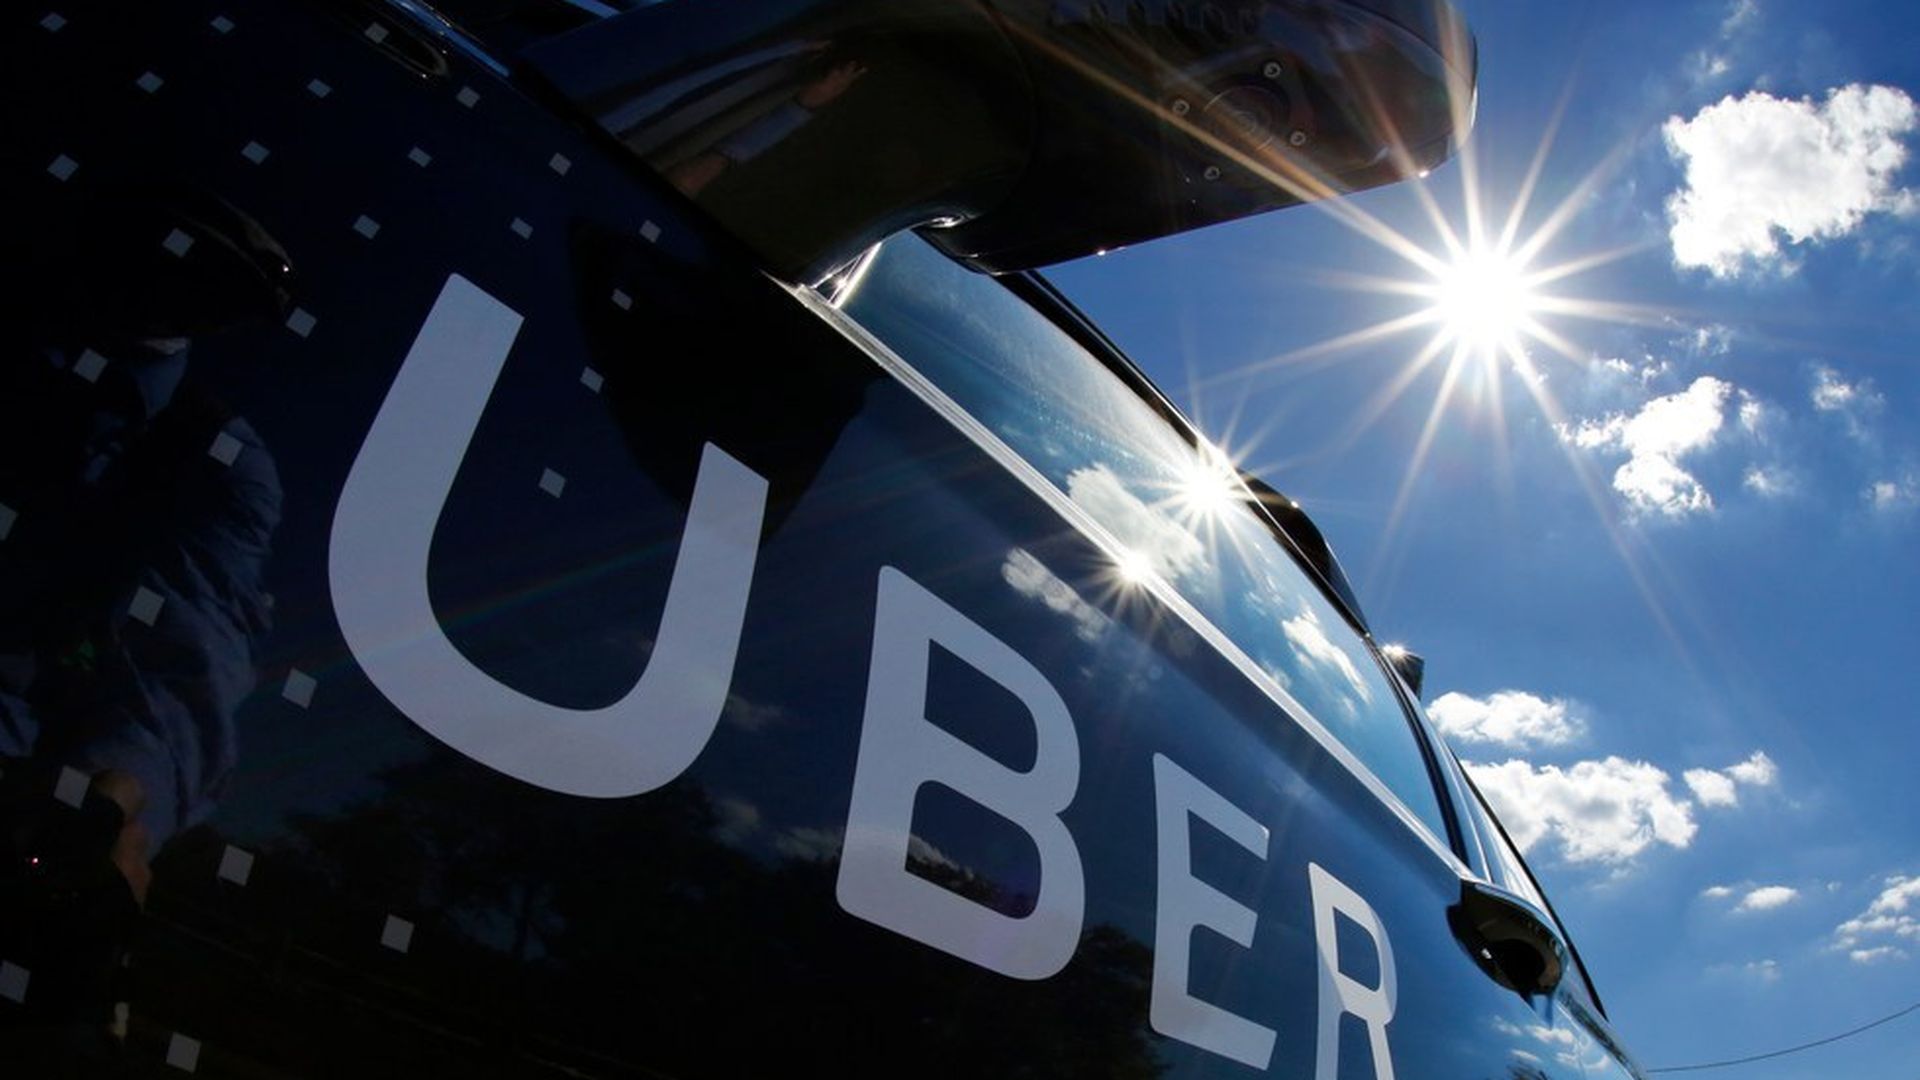 Uber's autonomous cars have driven 1 million miles